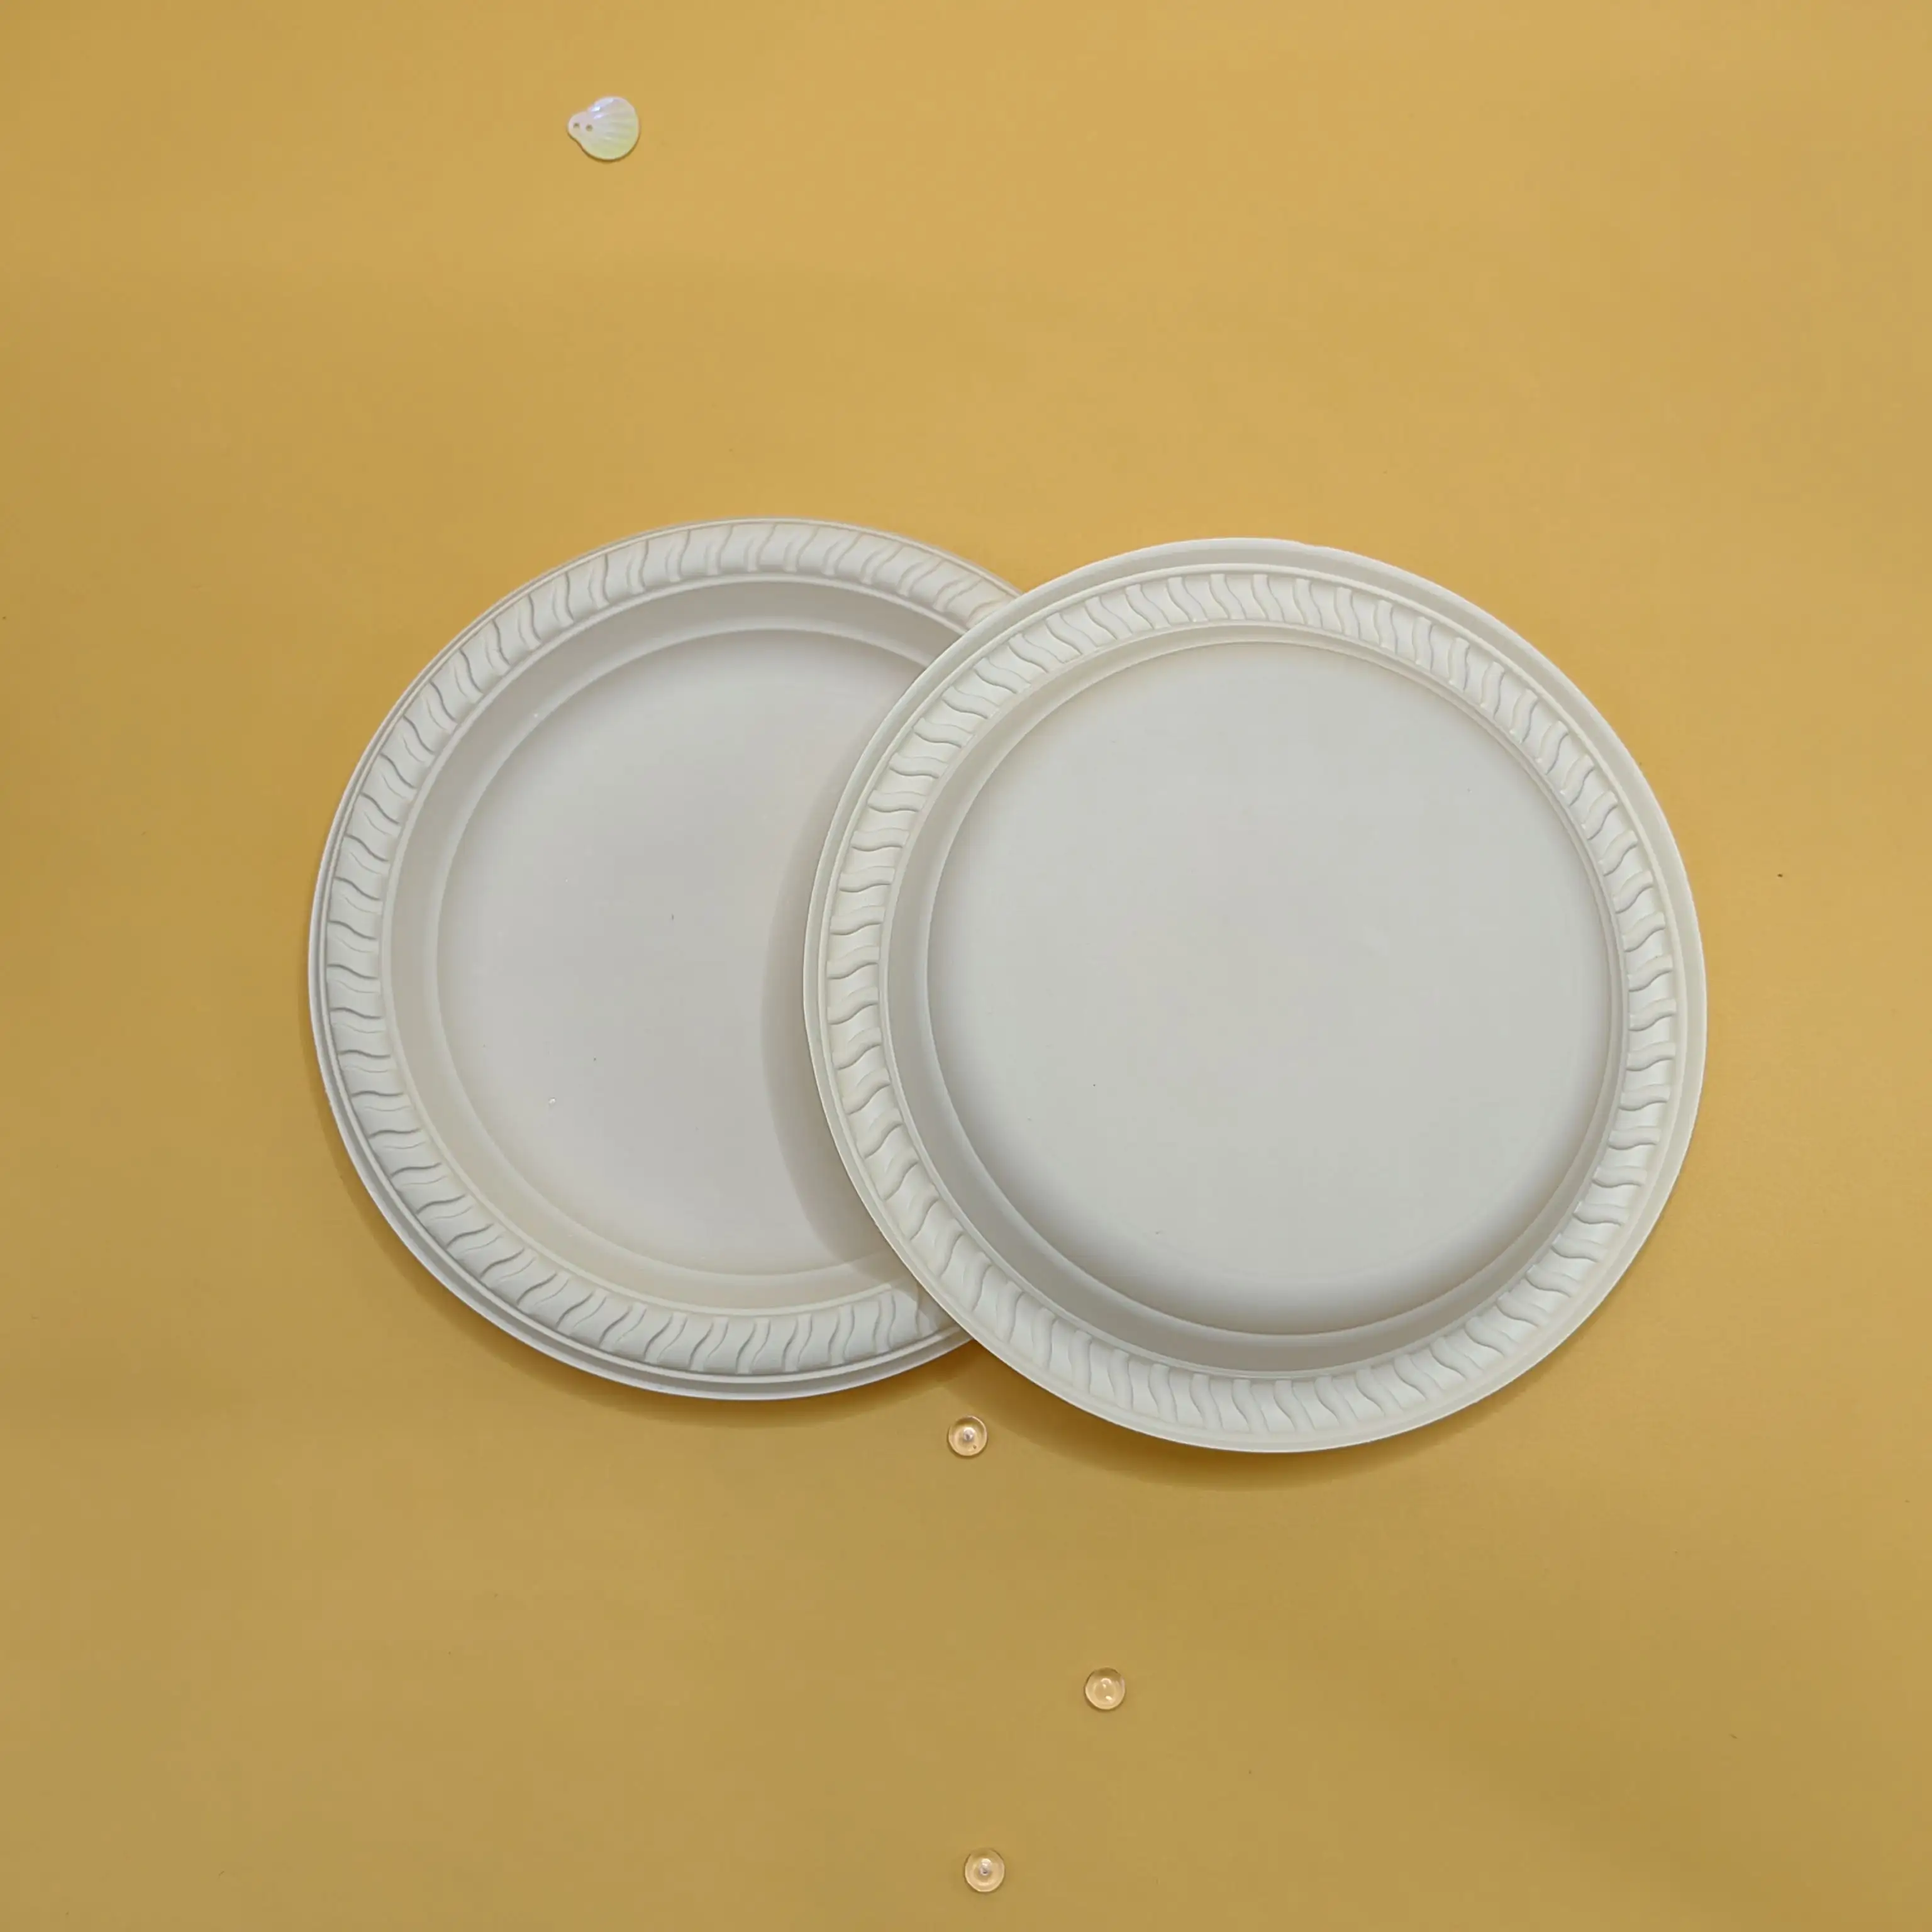 Logotipo y diseño personalizados compatibles con placa redonda biodegradable desechable